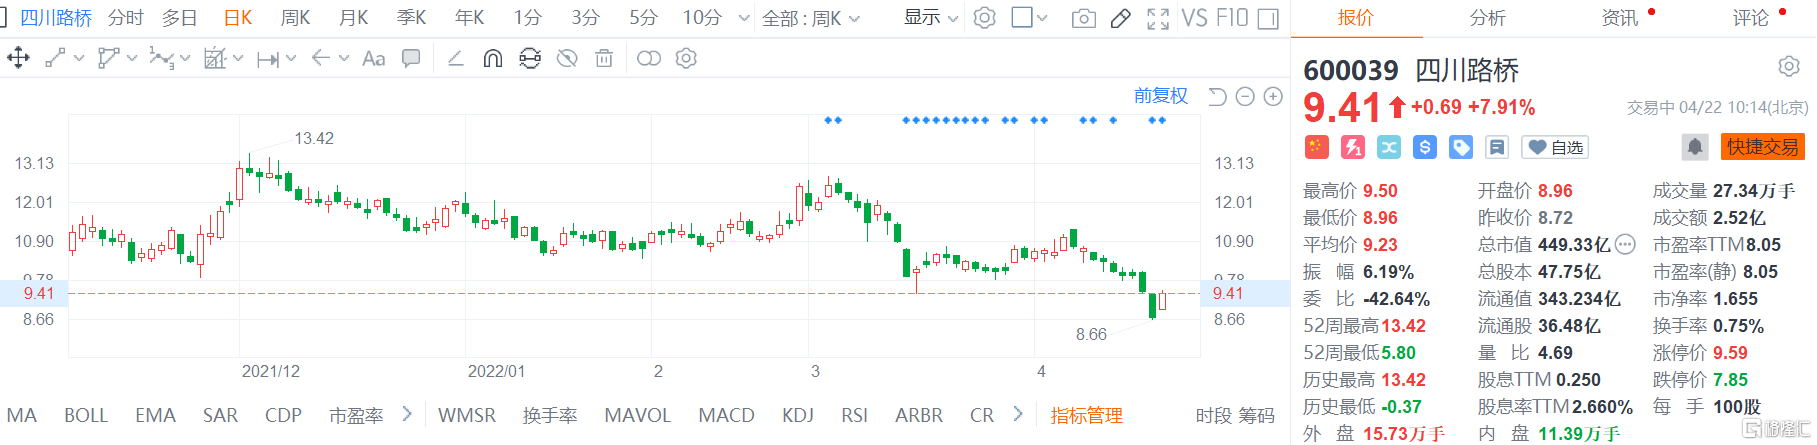 四川路桥(600039.SH)股价反弹回升 现报9.41元涨幅7.9%